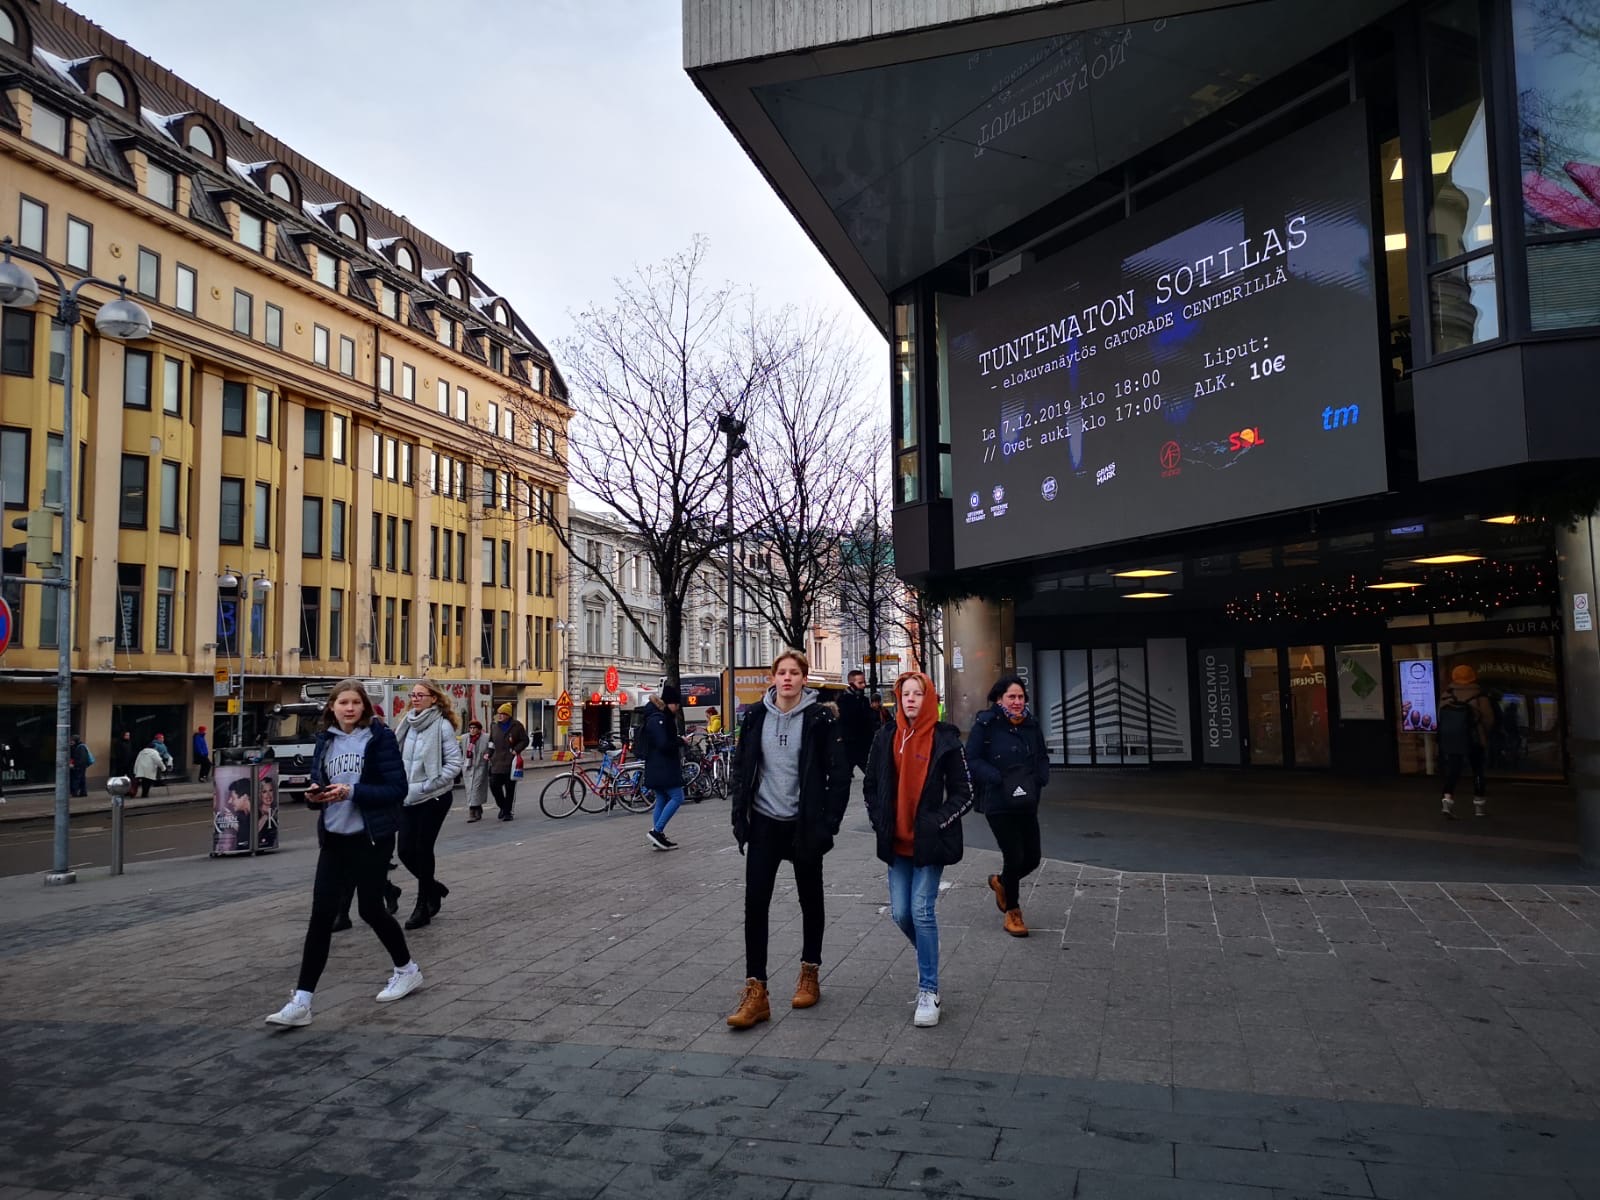 City Digital Turku | 1 LED-suurtaulua & 11 pystynäyttöä 1